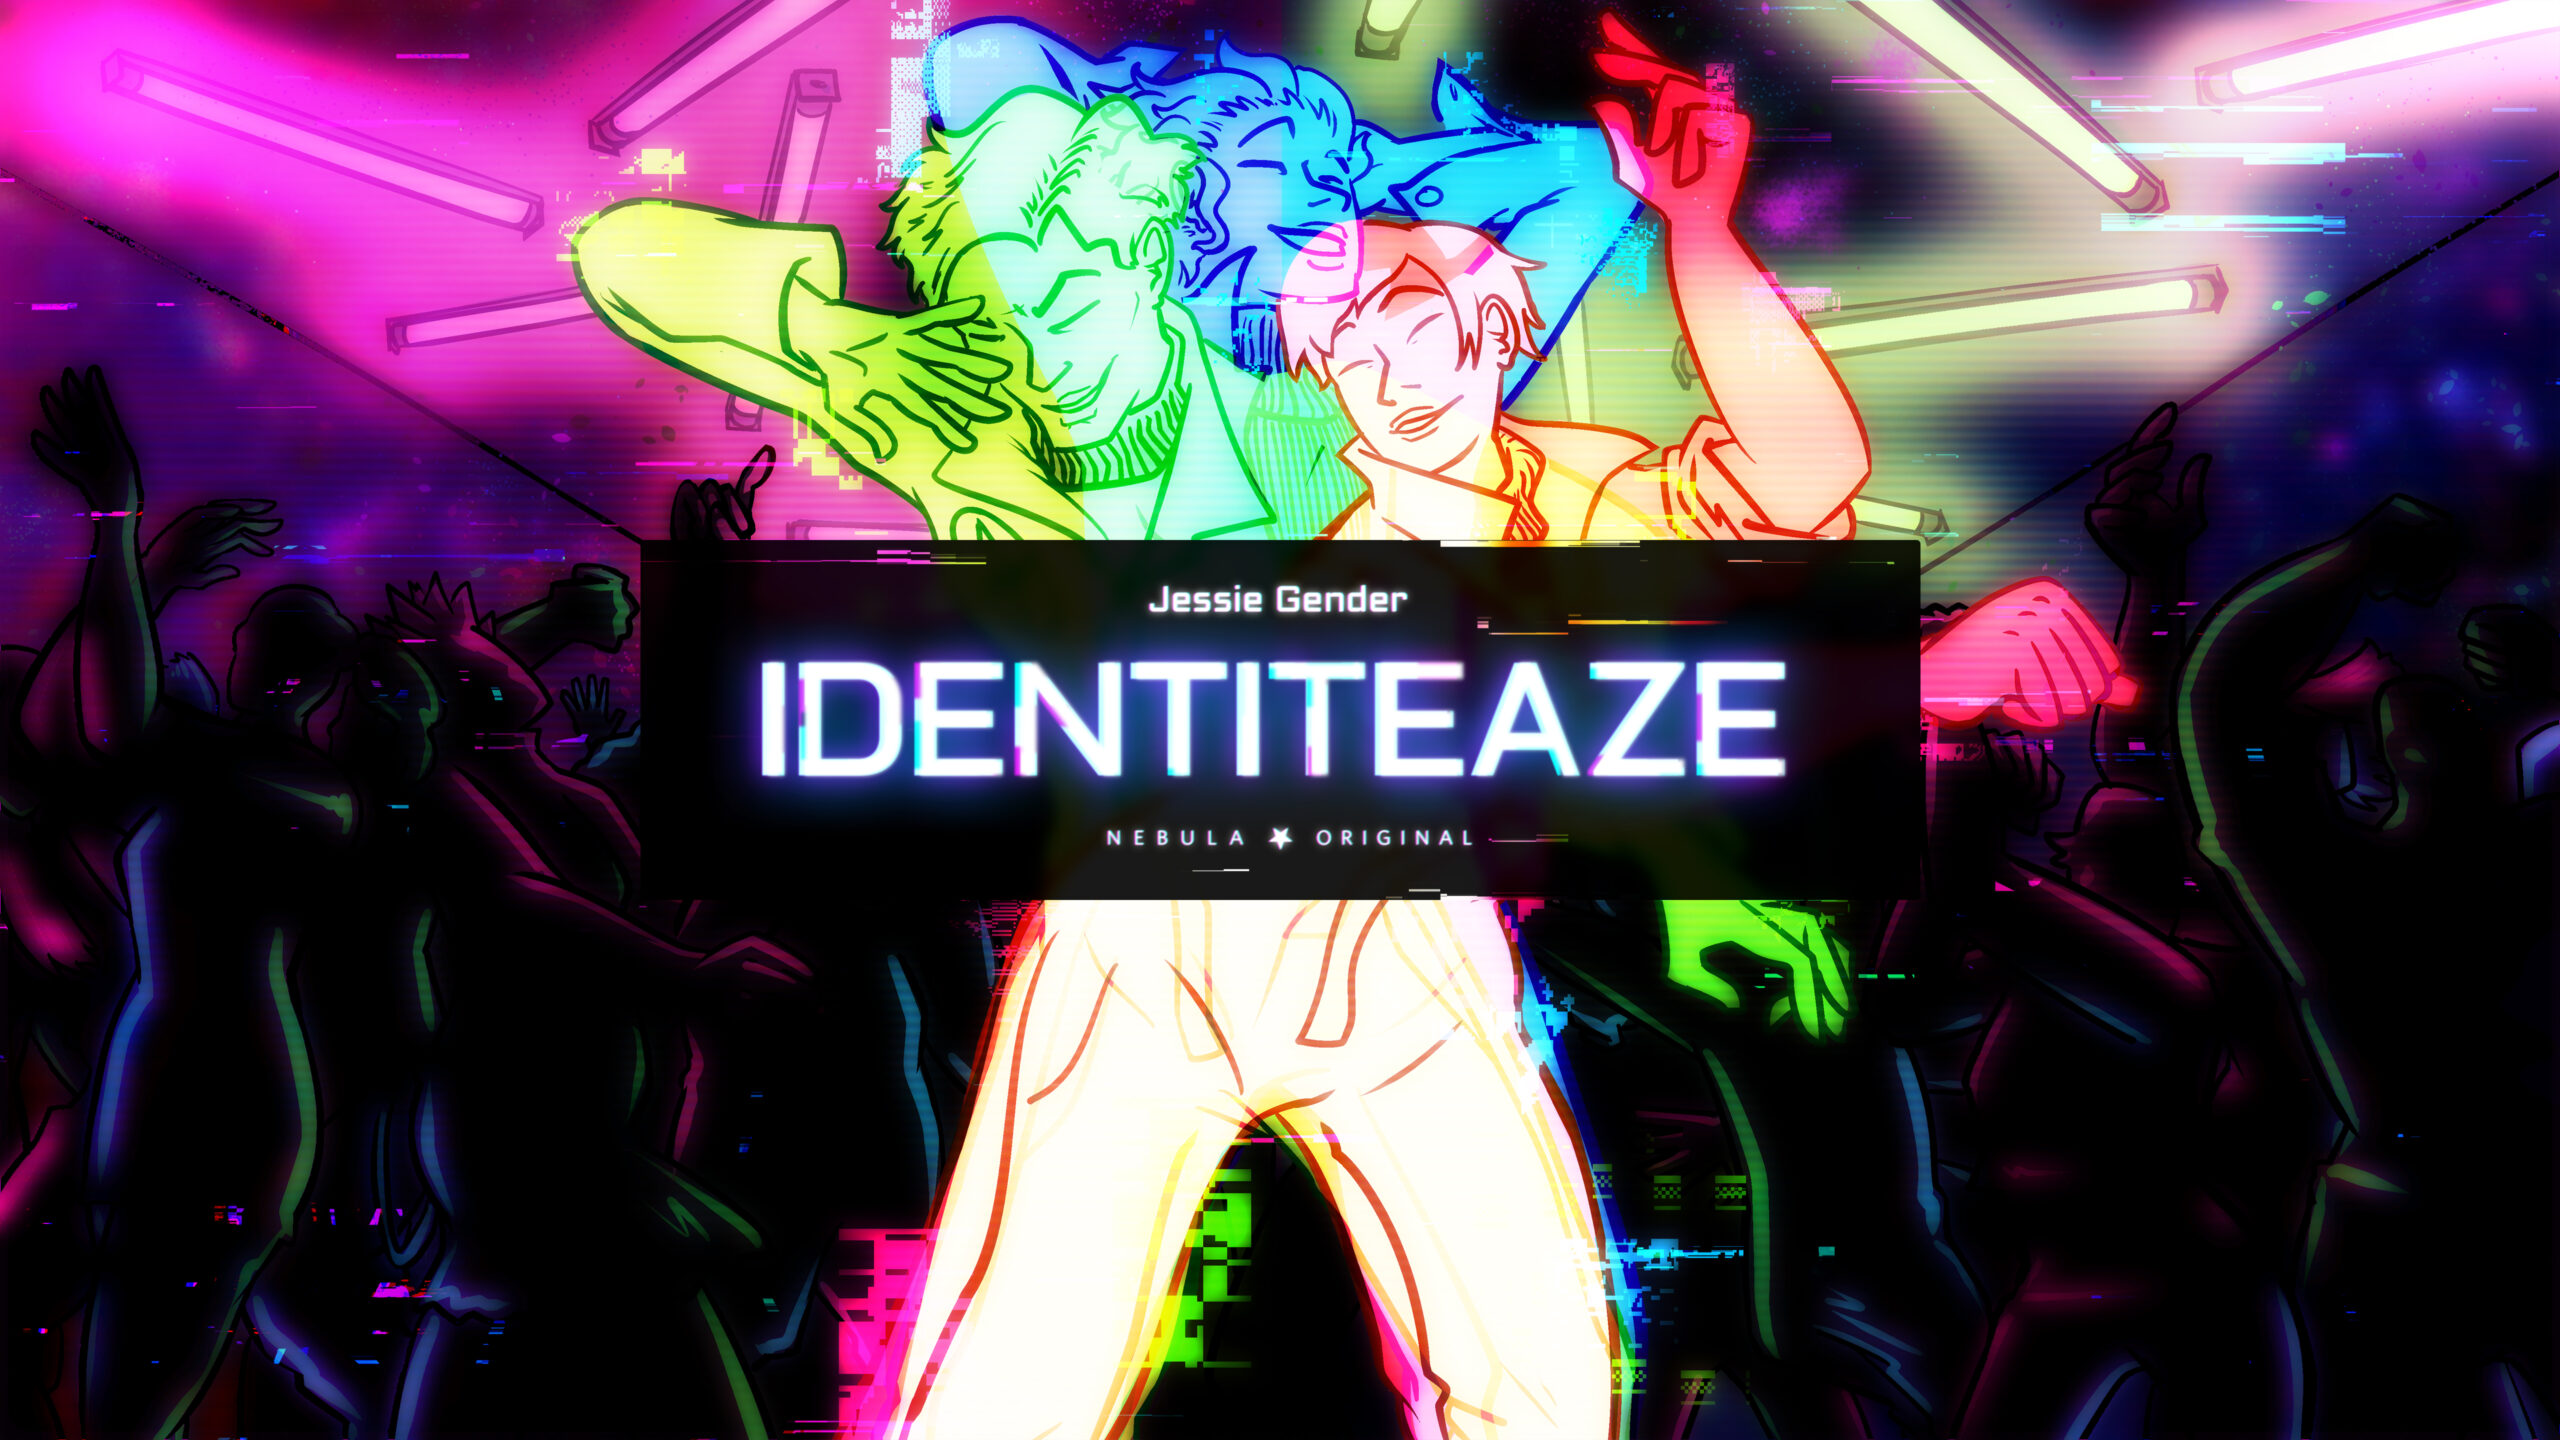 Identiteaze by Jessie Gender, a Nebula Original